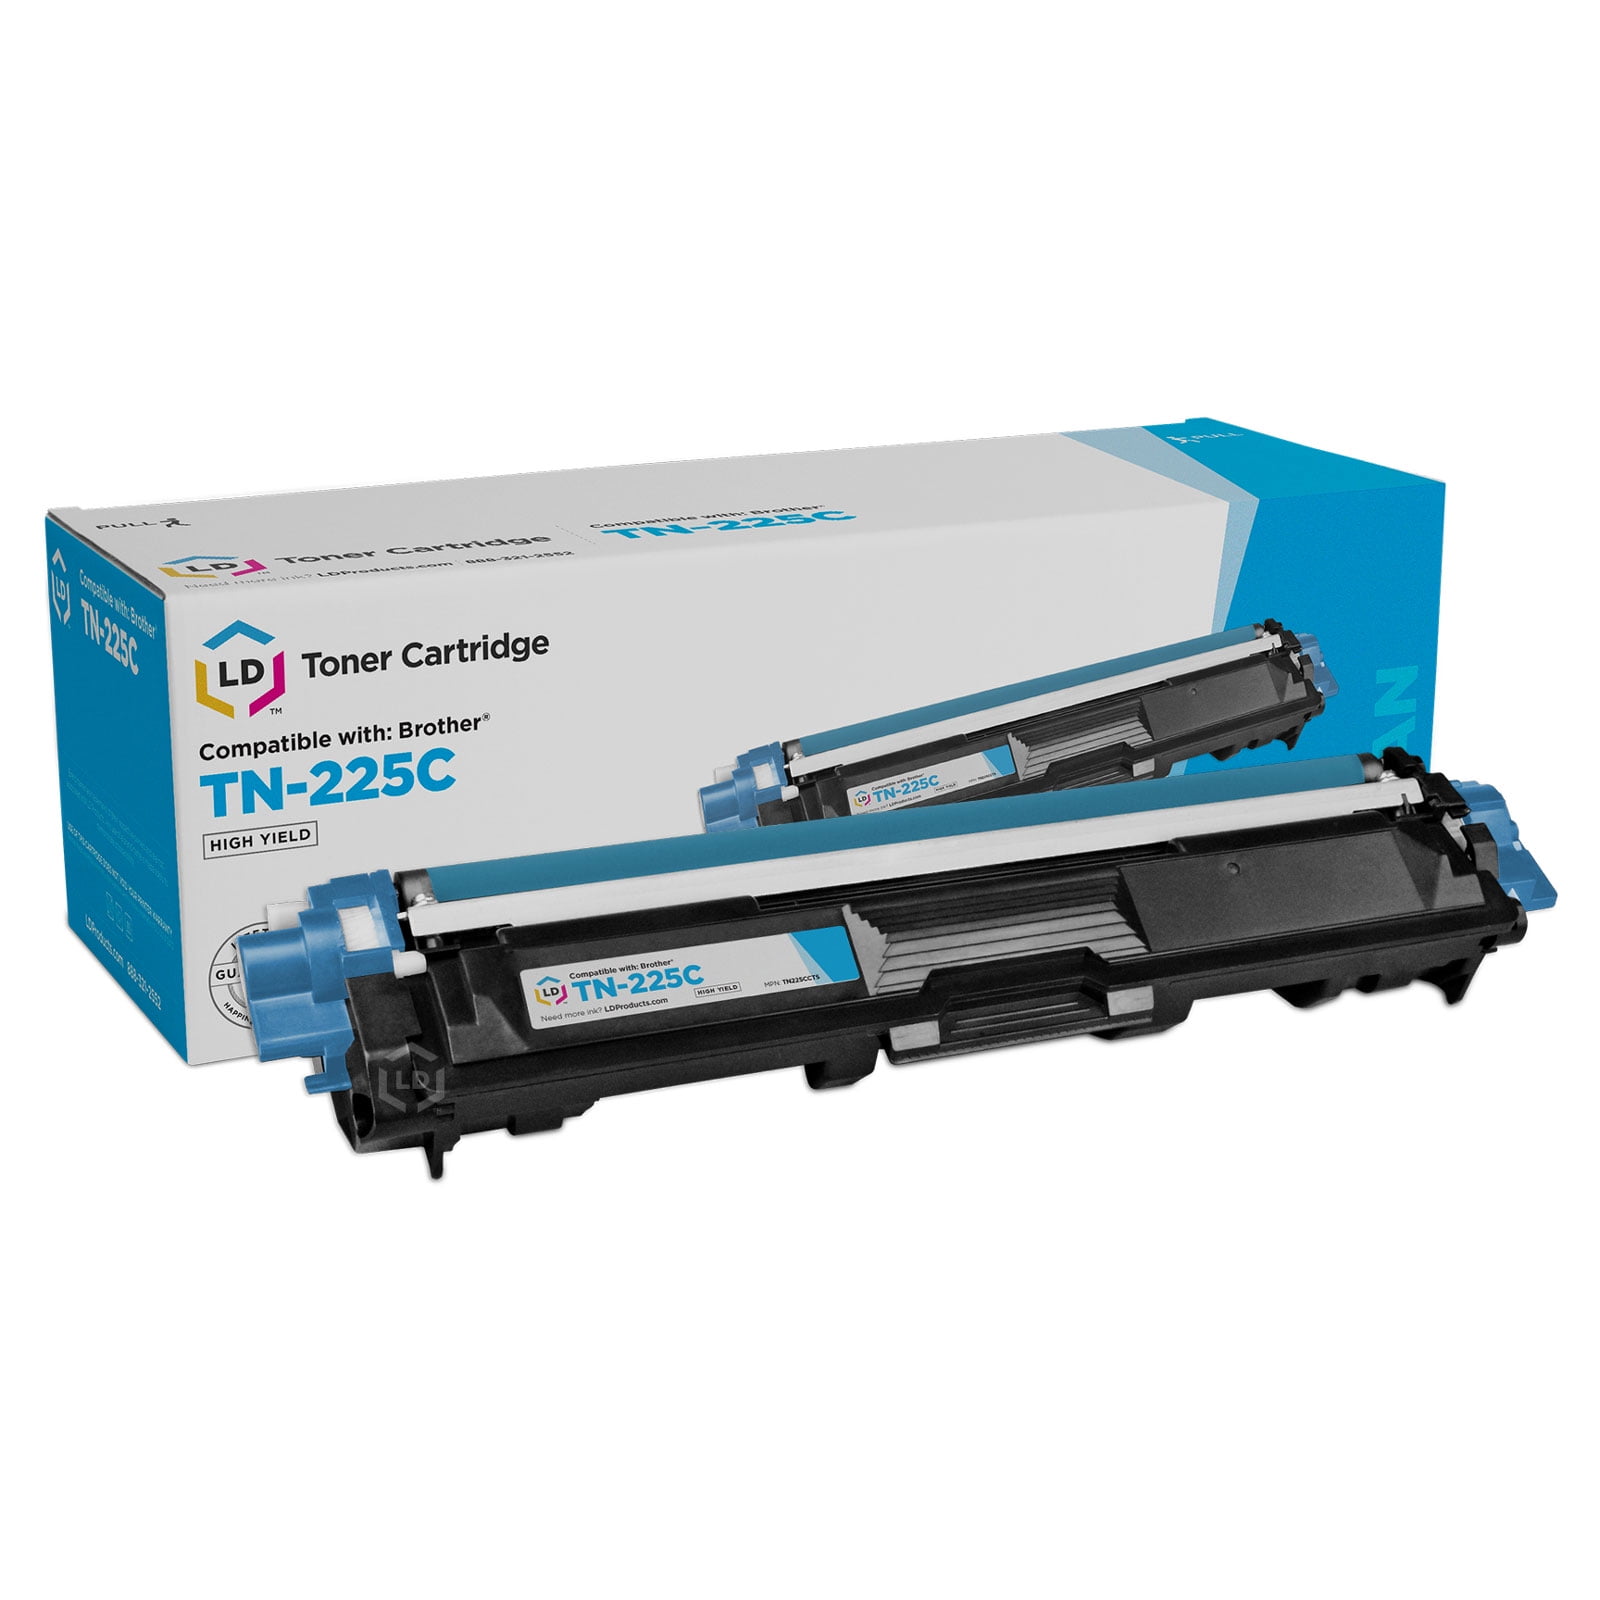 LD TN225 High Yield Cyan Laser Toner Cartridge for use in HL- 3140CW. HL-3170CDW, MFC-9130CW, MFC-9330CDW & MFC9340CDW Printers - Walmart.com